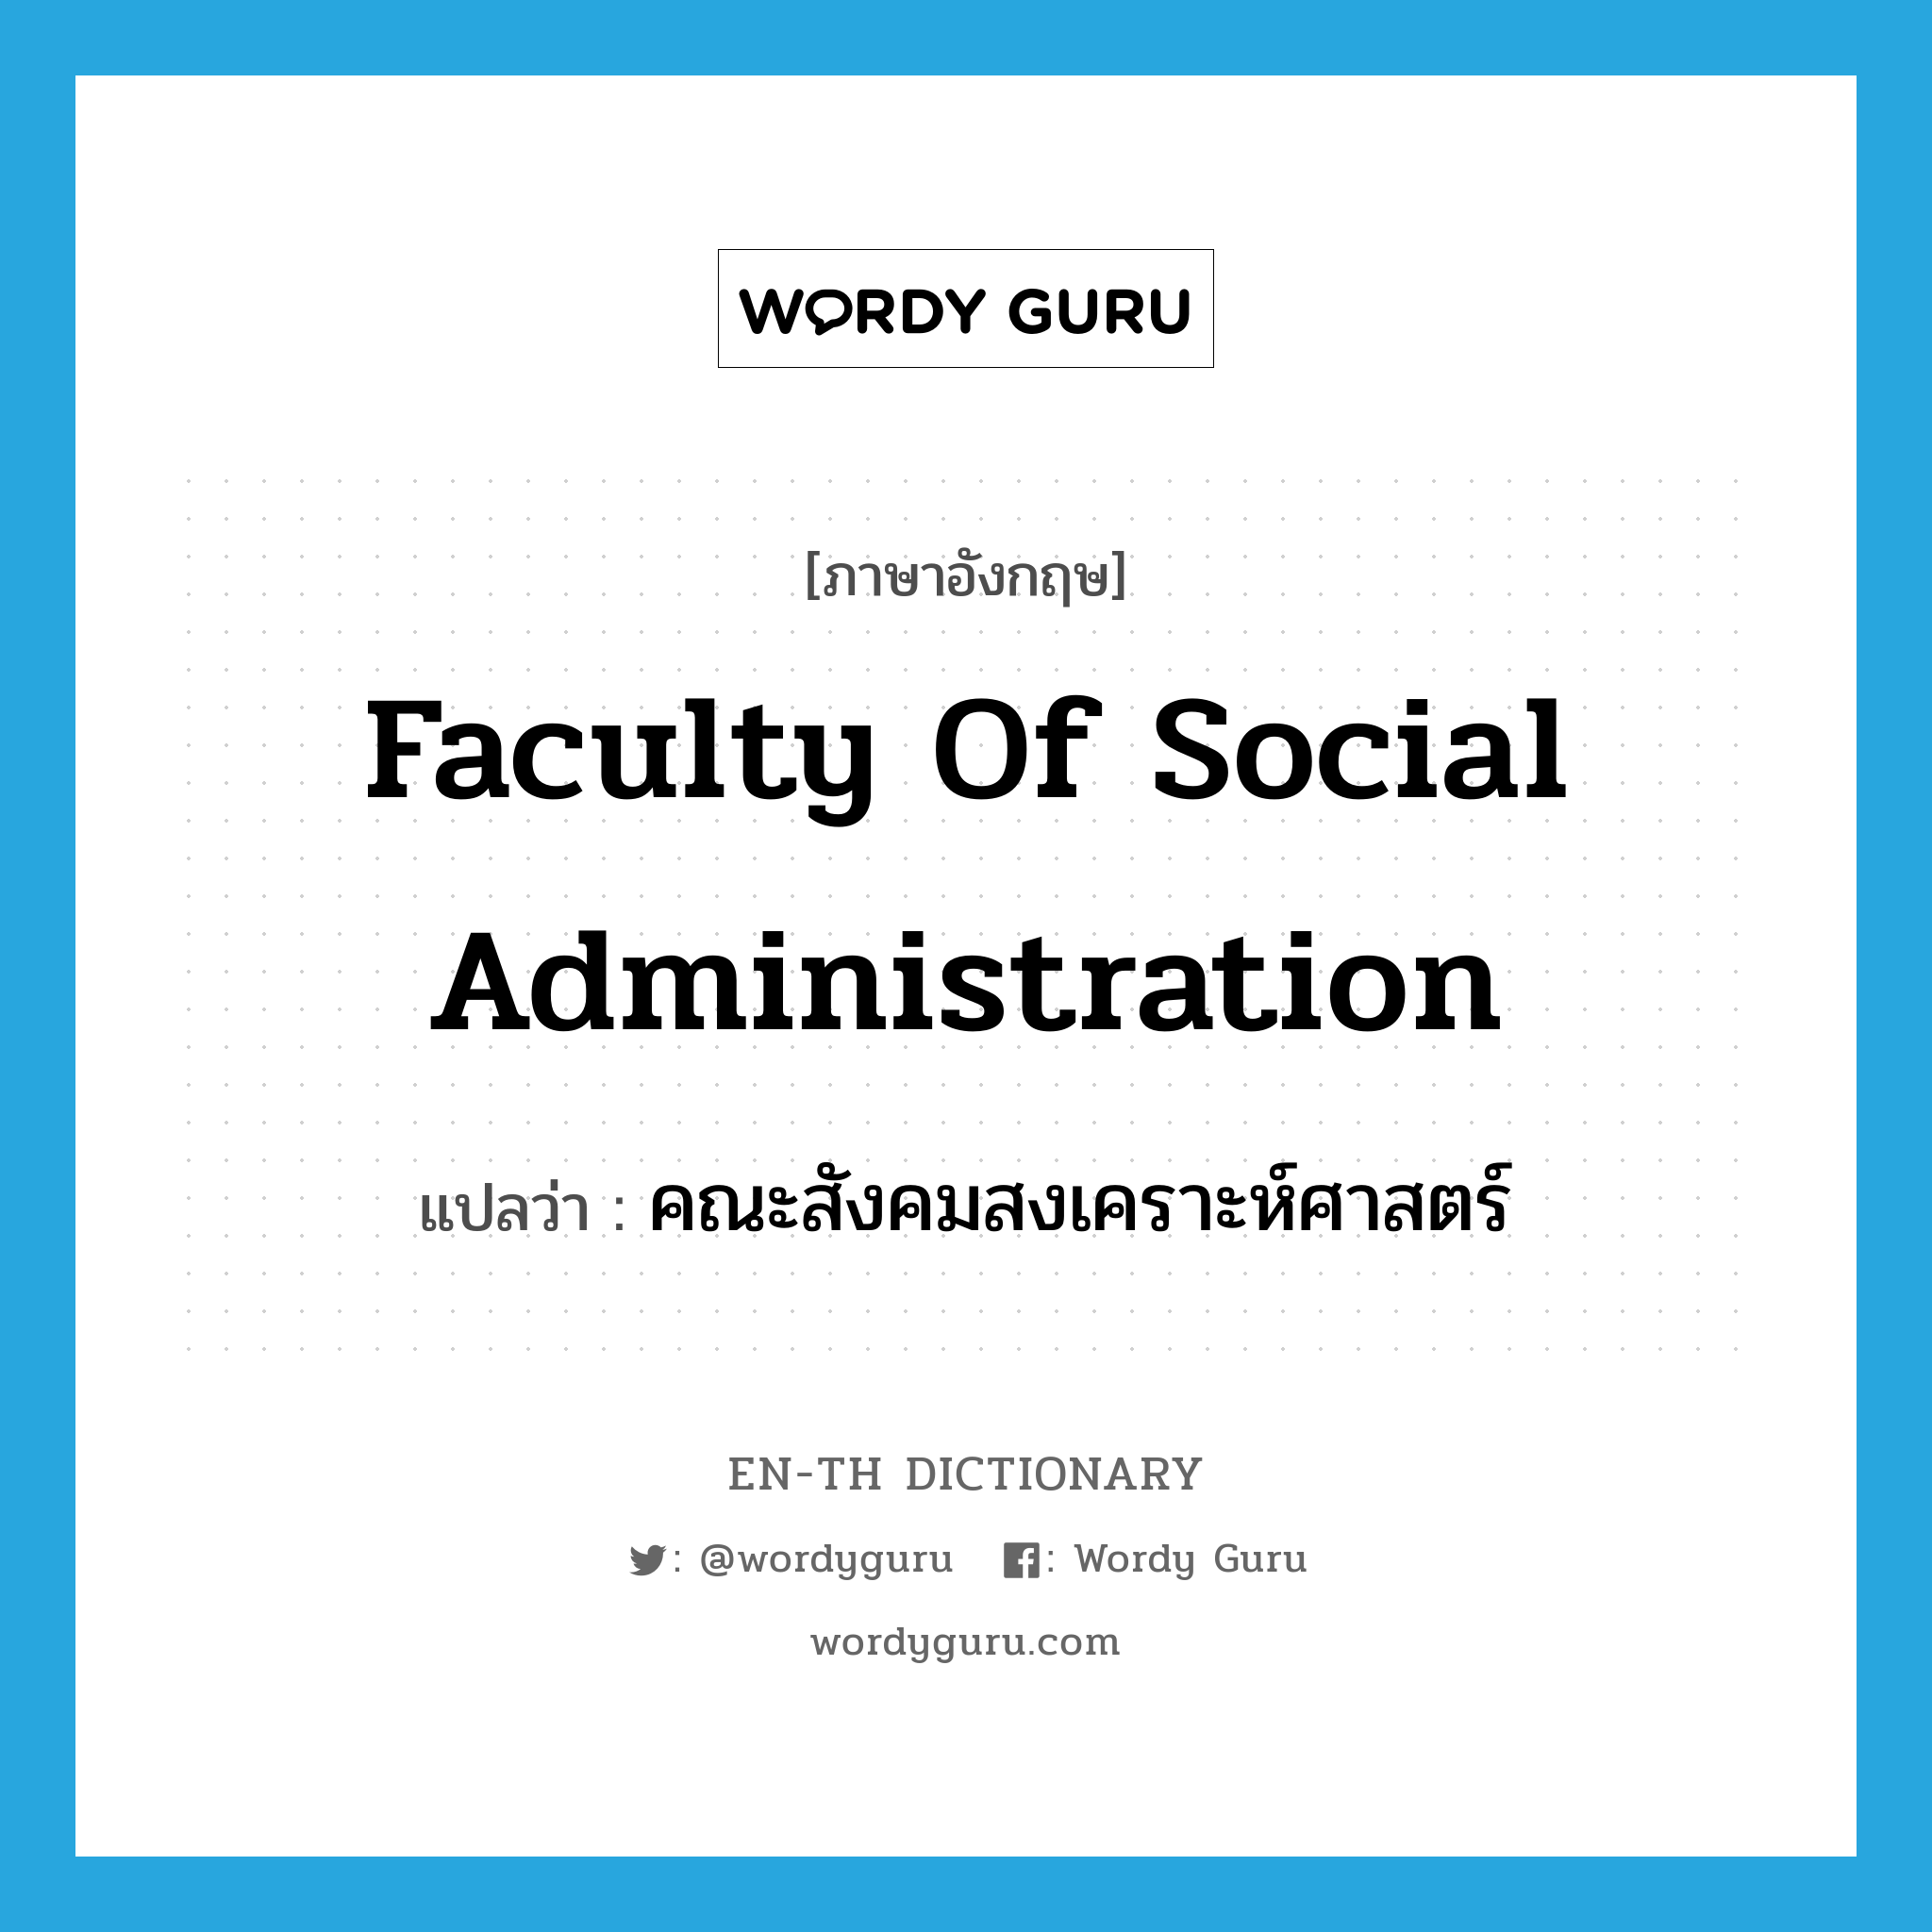 คณะสังคมสงเคราะห์ศาสตร์ ภาษาอังกฤษ?, คำศัพท์ภาษาอังกฤษ คณะสังคมสงเคราะห์ศาสตร์ แปลว่า Faculty of Social Administration ประเภท N หมวด N